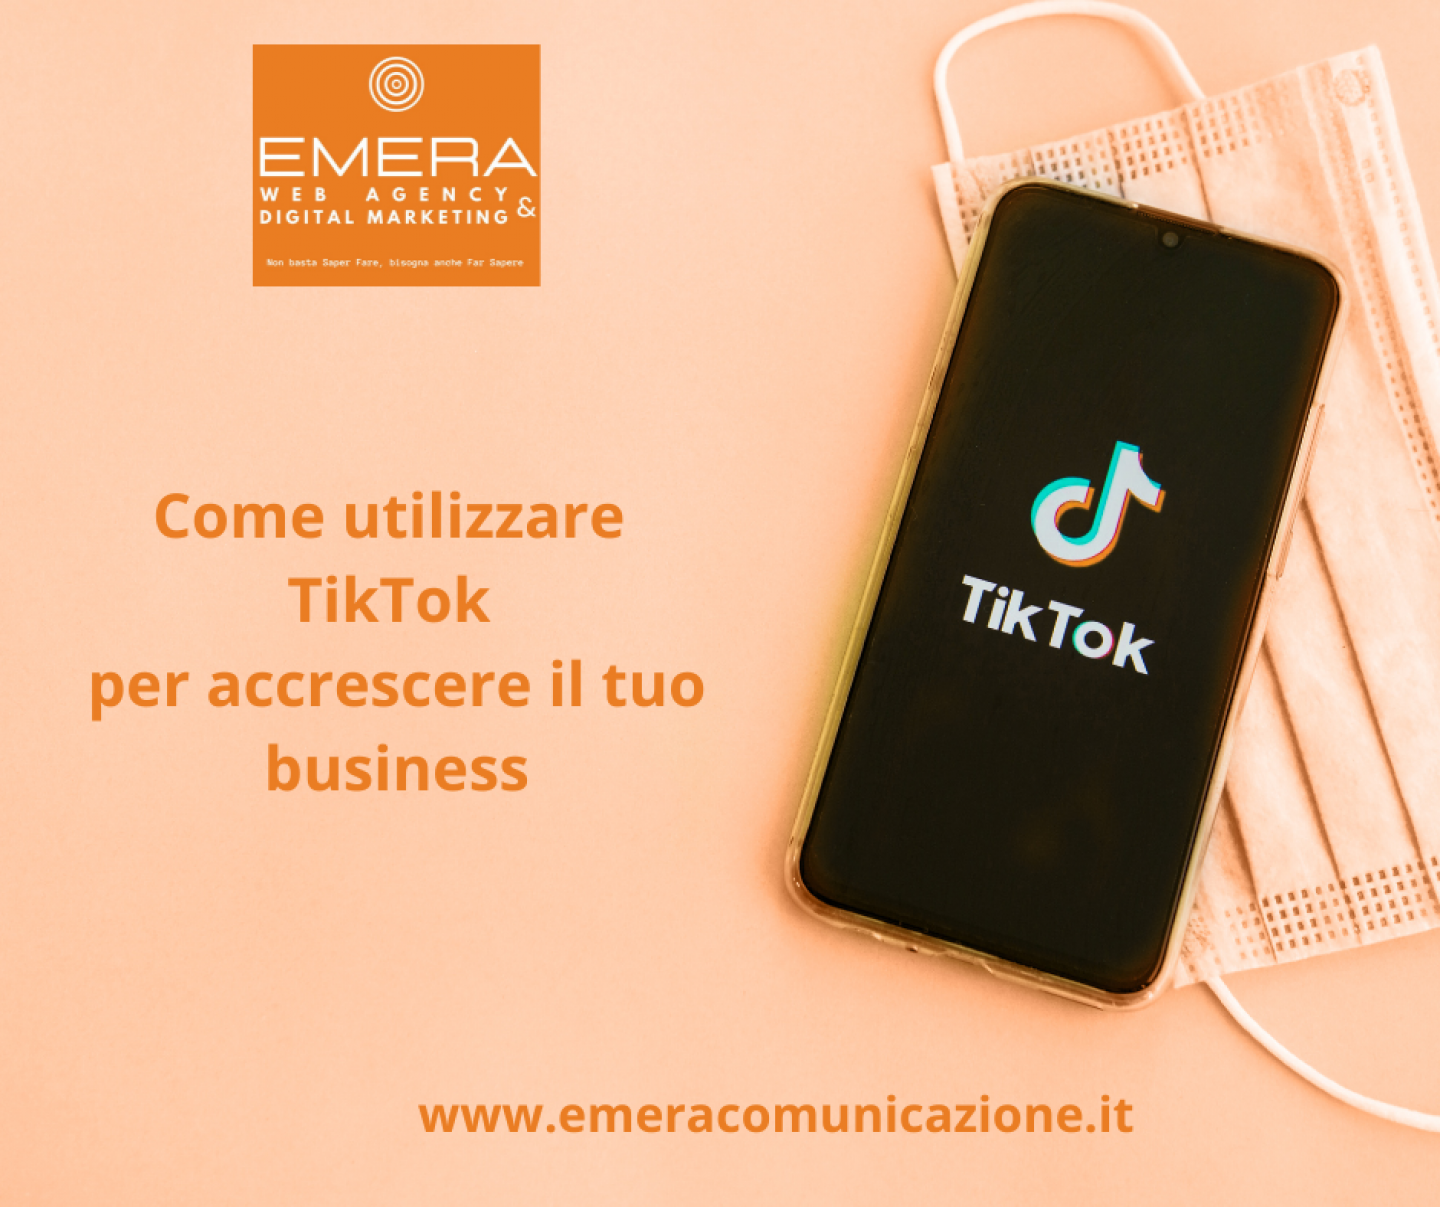 Come utilizzare Tik Tok per accrescere il tuo business (1)